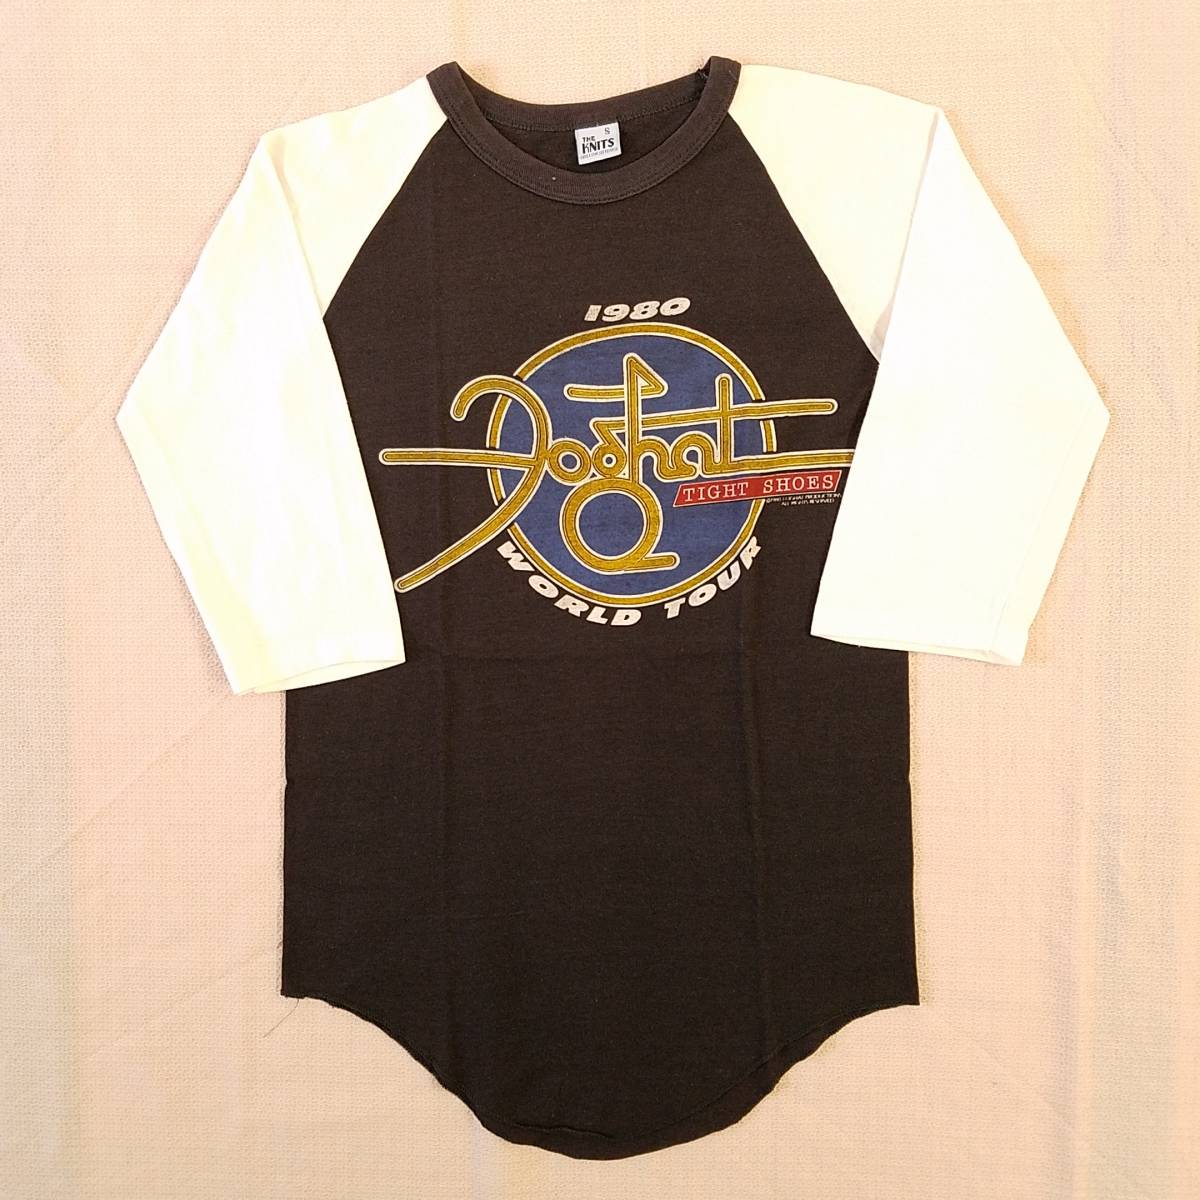 入荷中 KNiTSボディ THE SHOES”』ツアーラグランTシャツ “TIGHT 1980 TOUR WORLD 80s『Foghat(フォガット) 魅惑のバンドT特集! 米国製 S 黒×白 Tシャツ